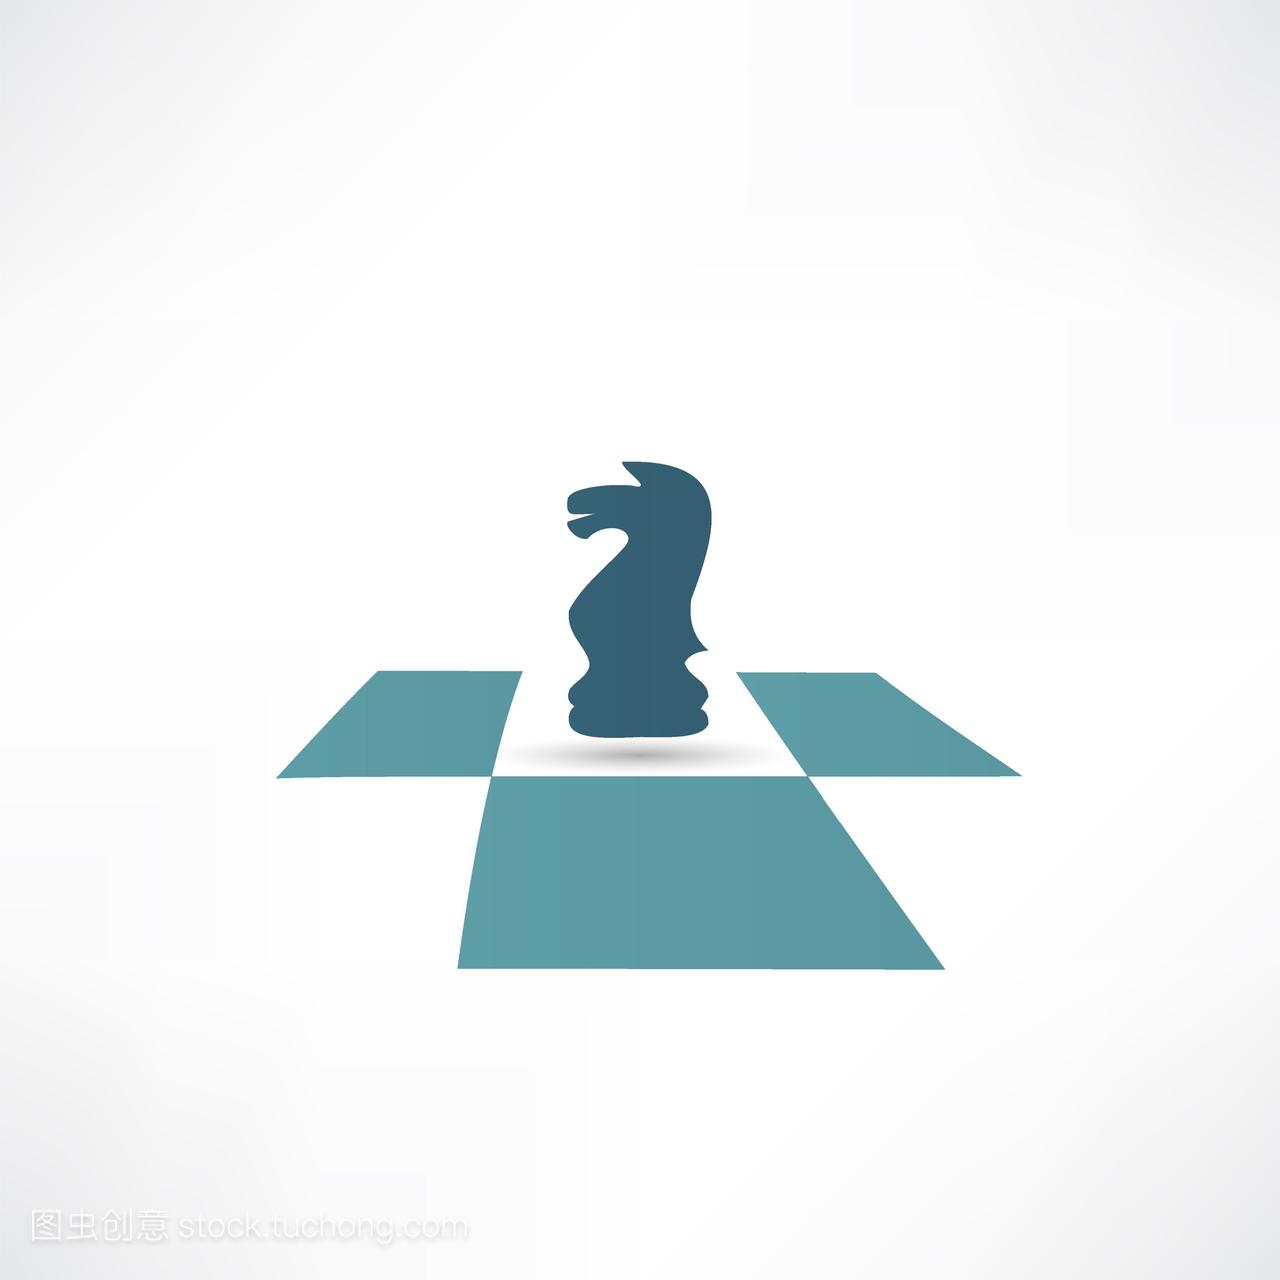 国际象棋,chess,vector,矢量图,图标,icon,pawn,